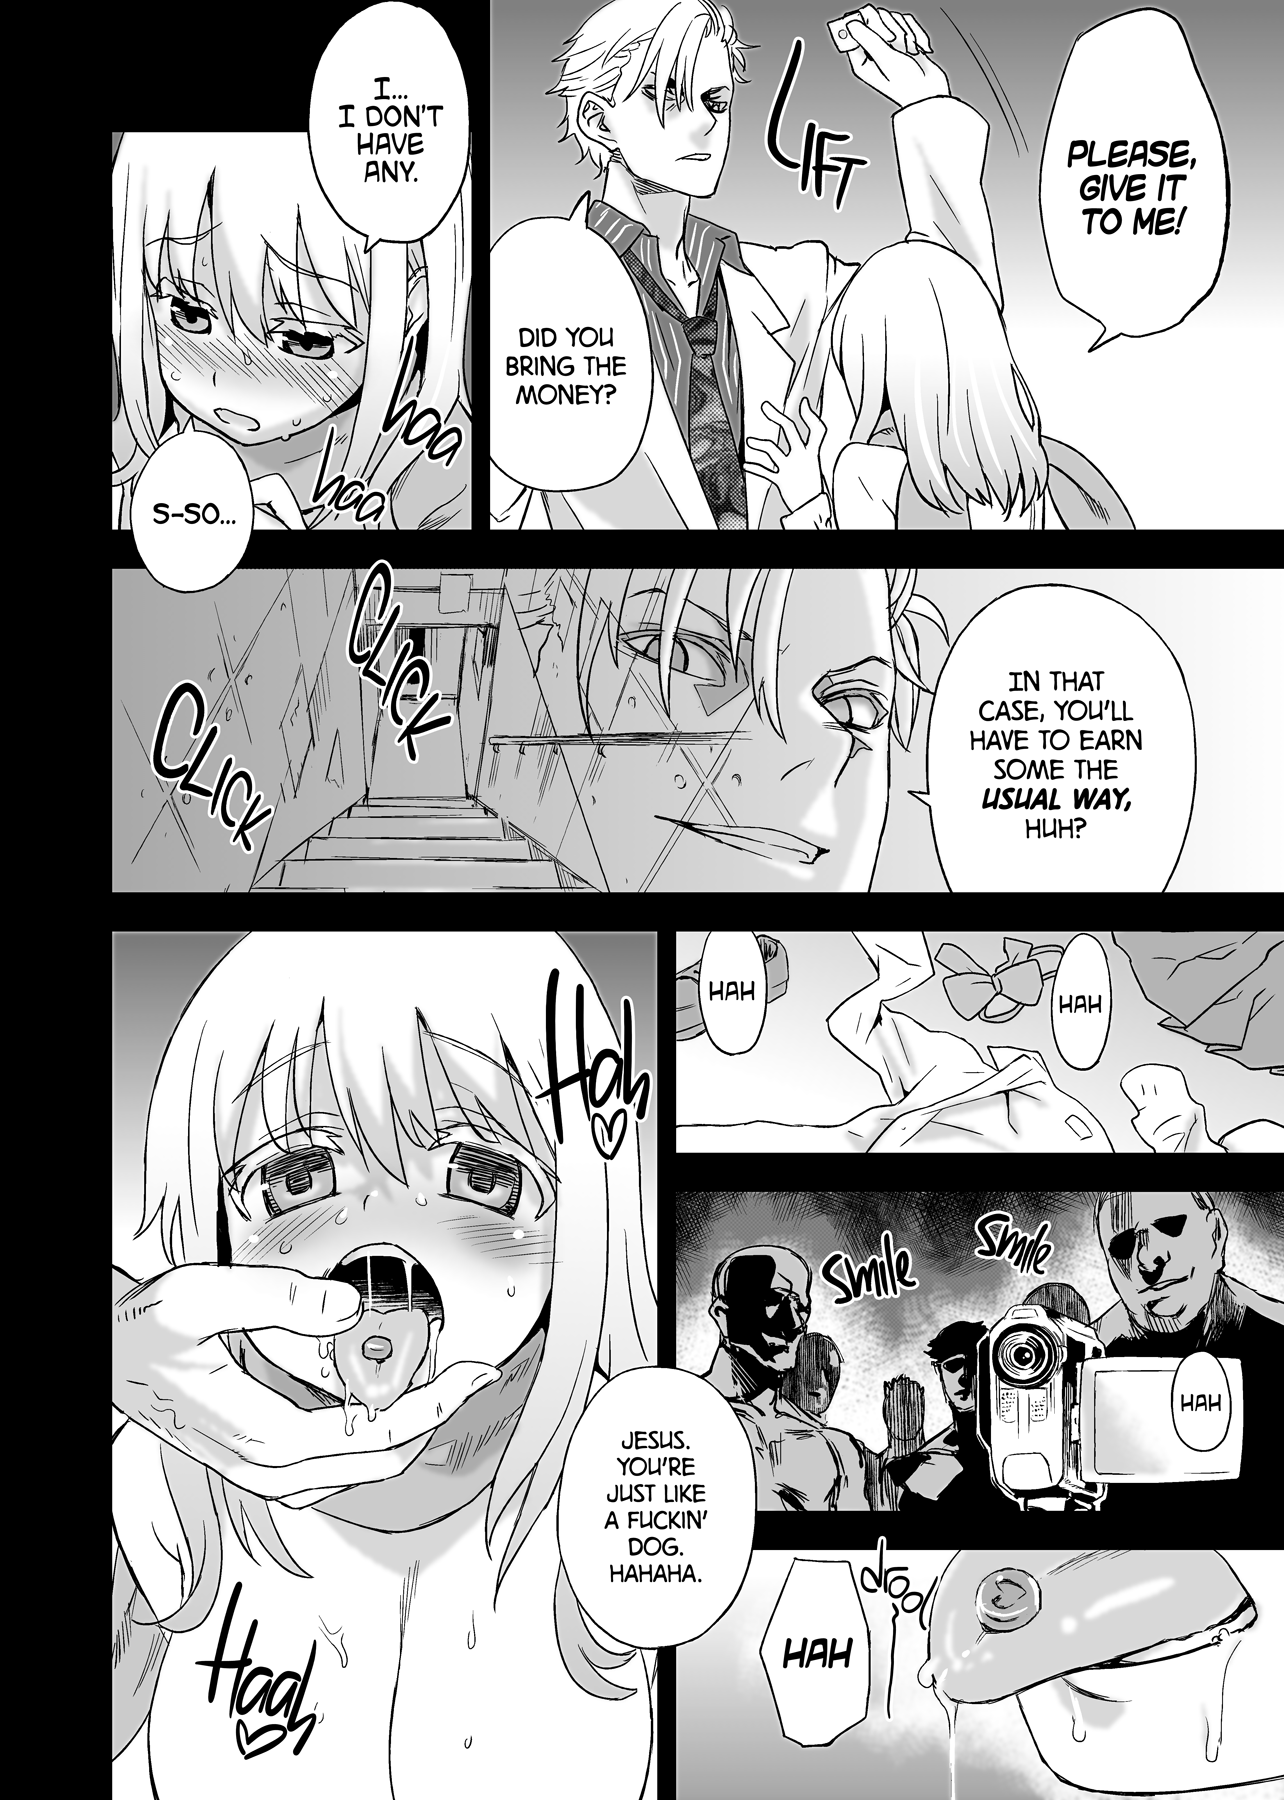 Victim Girls 13 - DRAGON SLAYER hentai manga picture 4